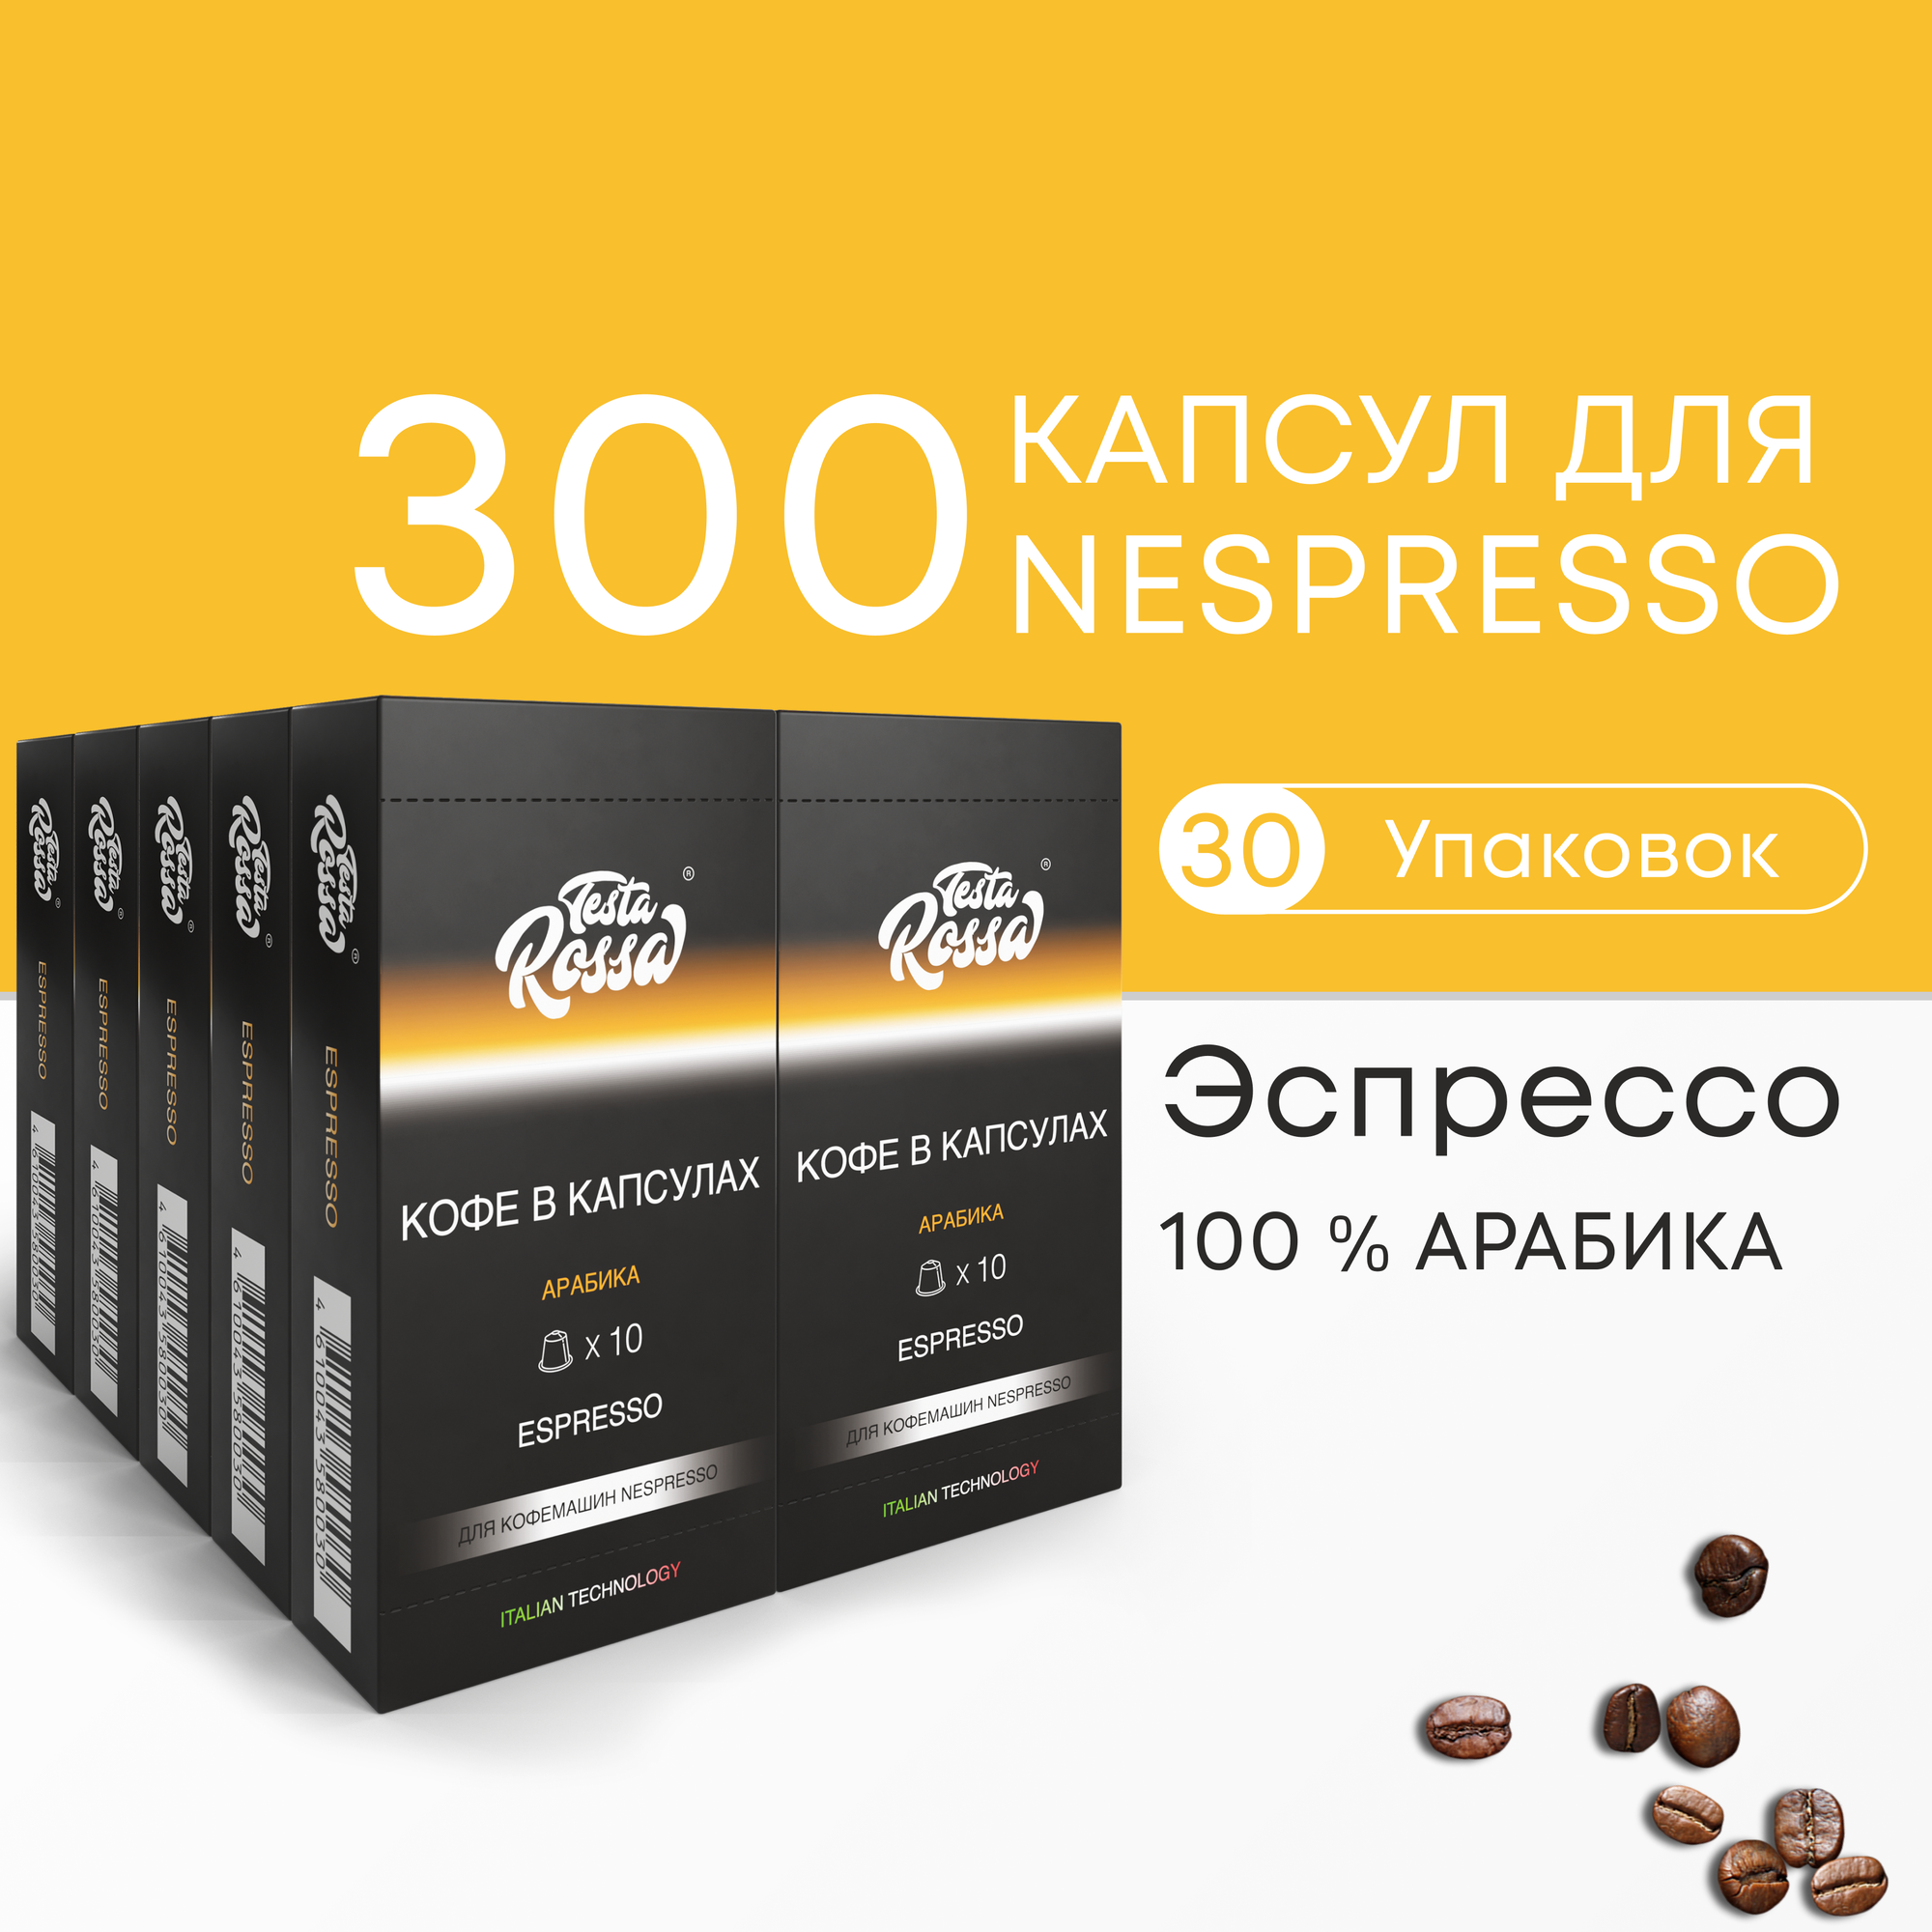 Эспрессо Арабика 100% - Капсулы Testa Rossa - 500 шт набор кофе в капсулах неспрессо для кофемашины NESPRESSO